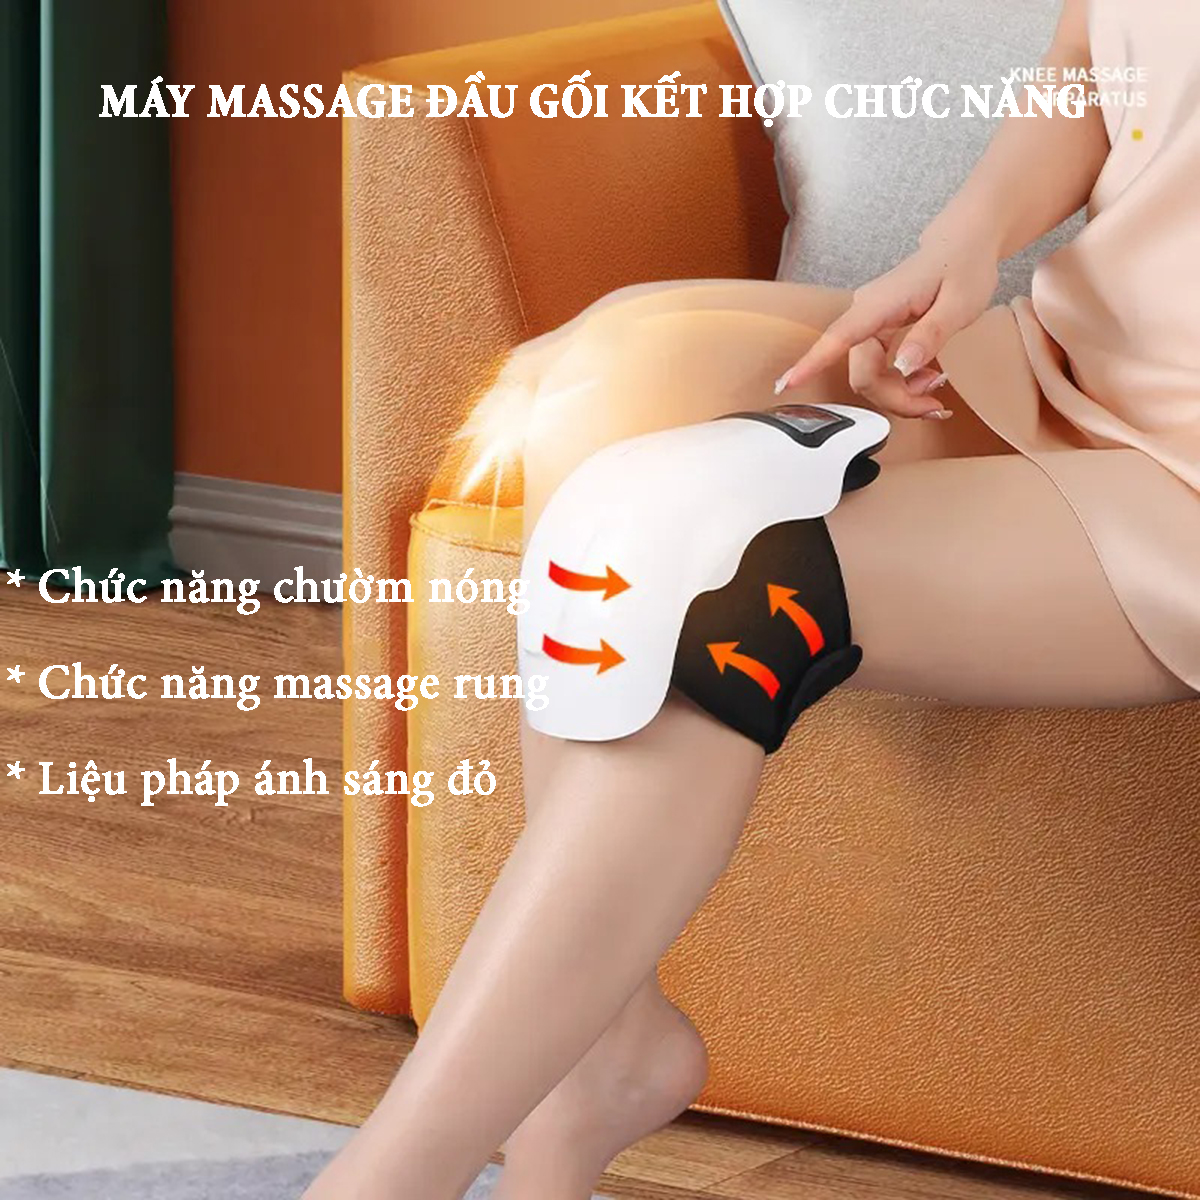 Máy massage đầu gối 9 cấp độ rung kết hợp chức năng chườm nóng với ánh sáng đỏ 9 mức nhiệt độ công suất 10W giảm đau mỏi, giải pháp trị liệu hiệu quả